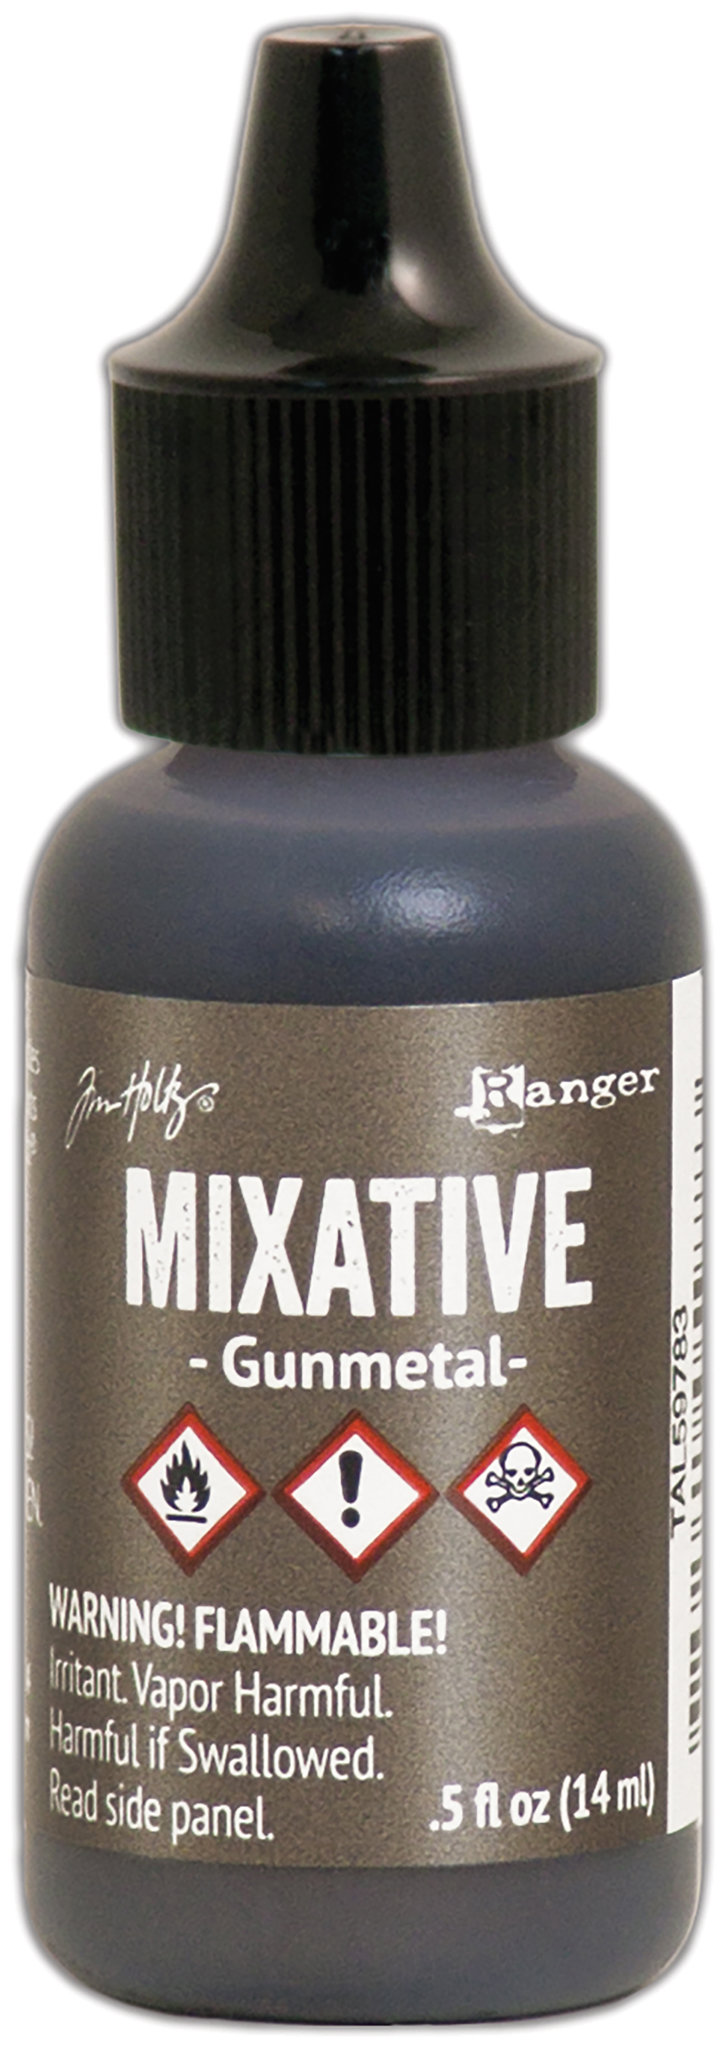 Bild von Tim Holtz Alcohol Ink Metallic Mixatives-Gunmetal